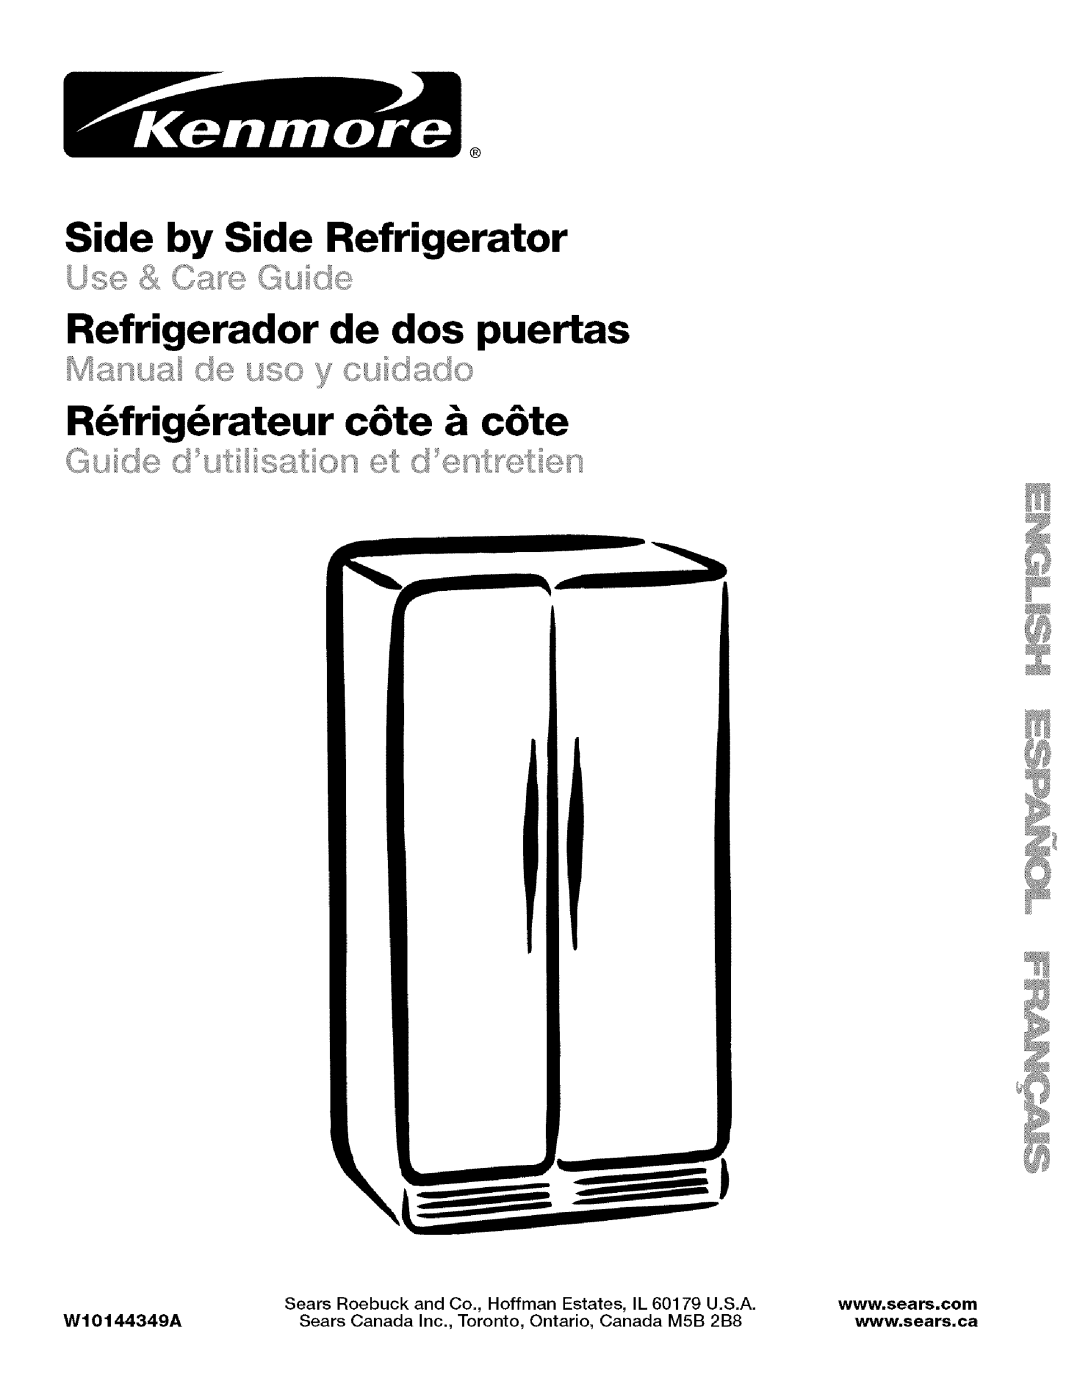 Kenmore w10144349A manual Side by Side Refrigerator, Refrigerador de dos puertas, R frig rateur c6te & c6te, Sears Roebuck 